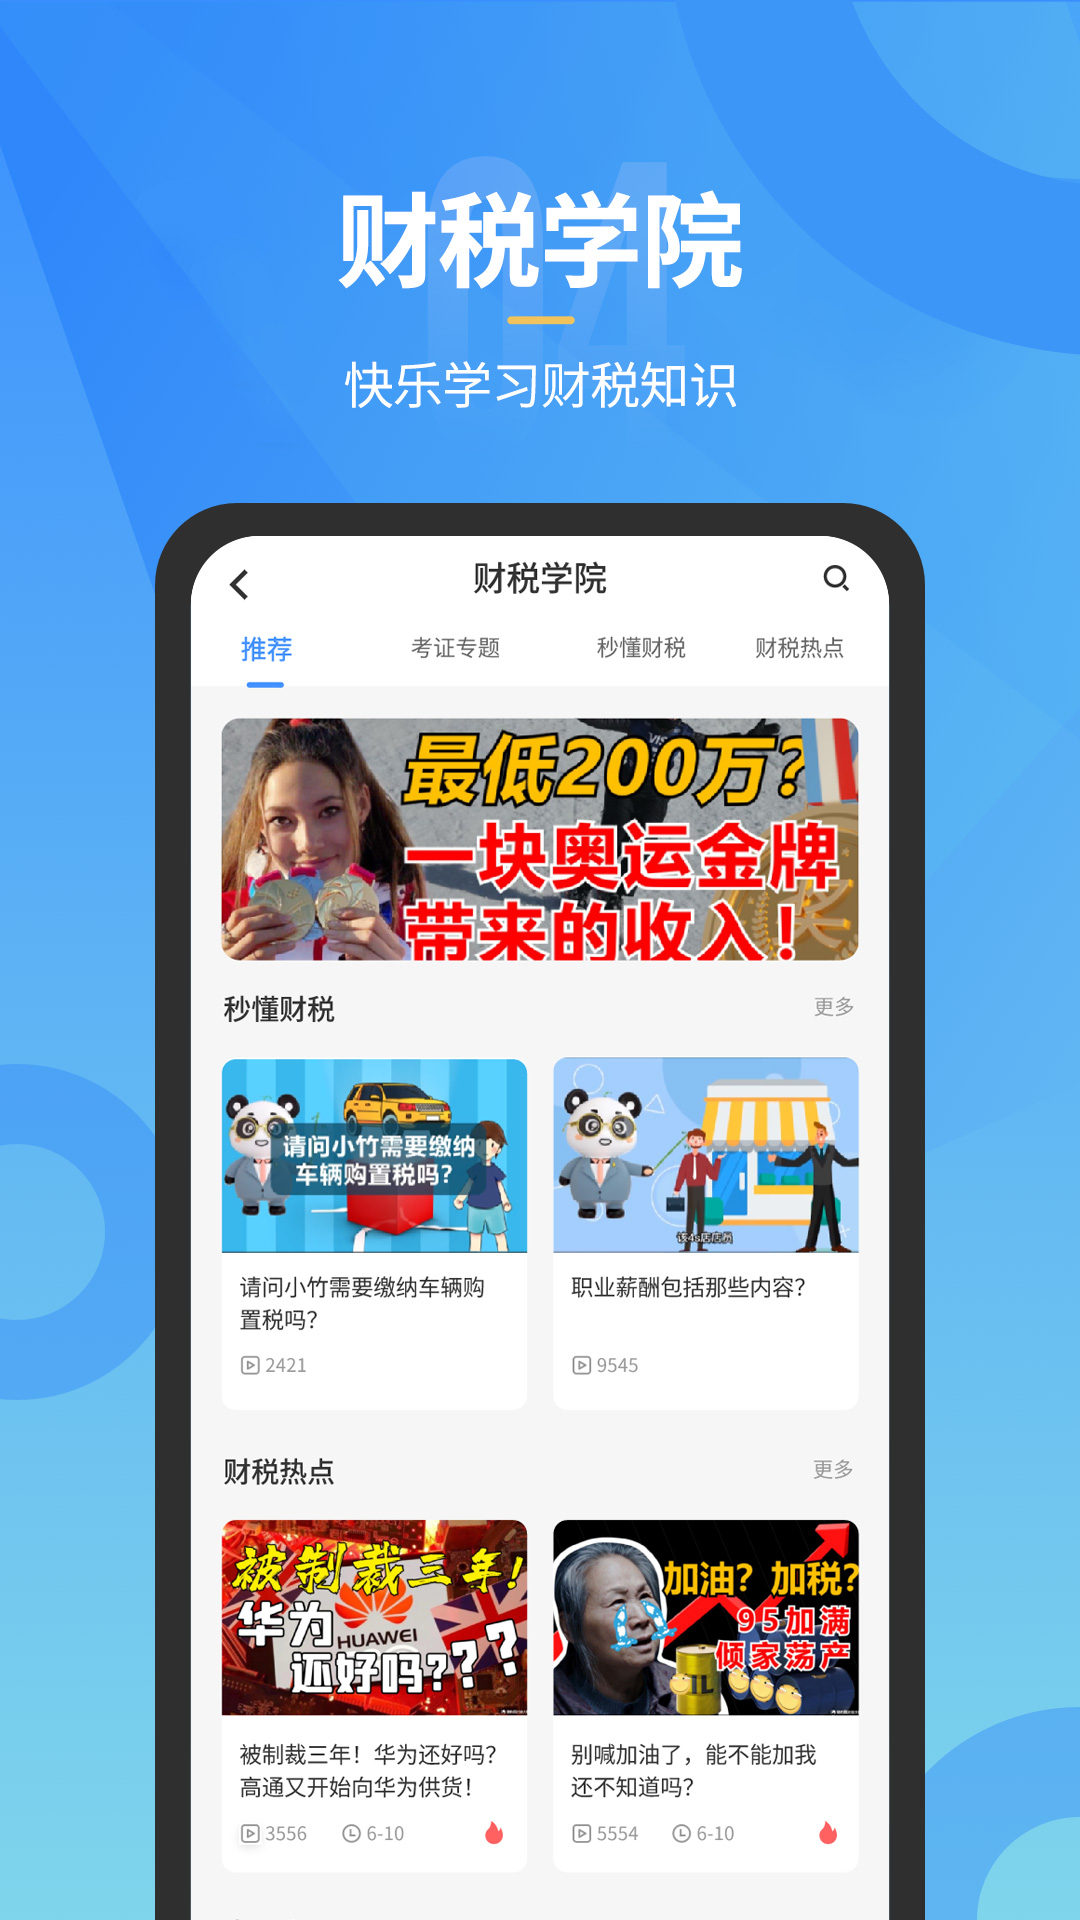 小竹财税app1.7.5